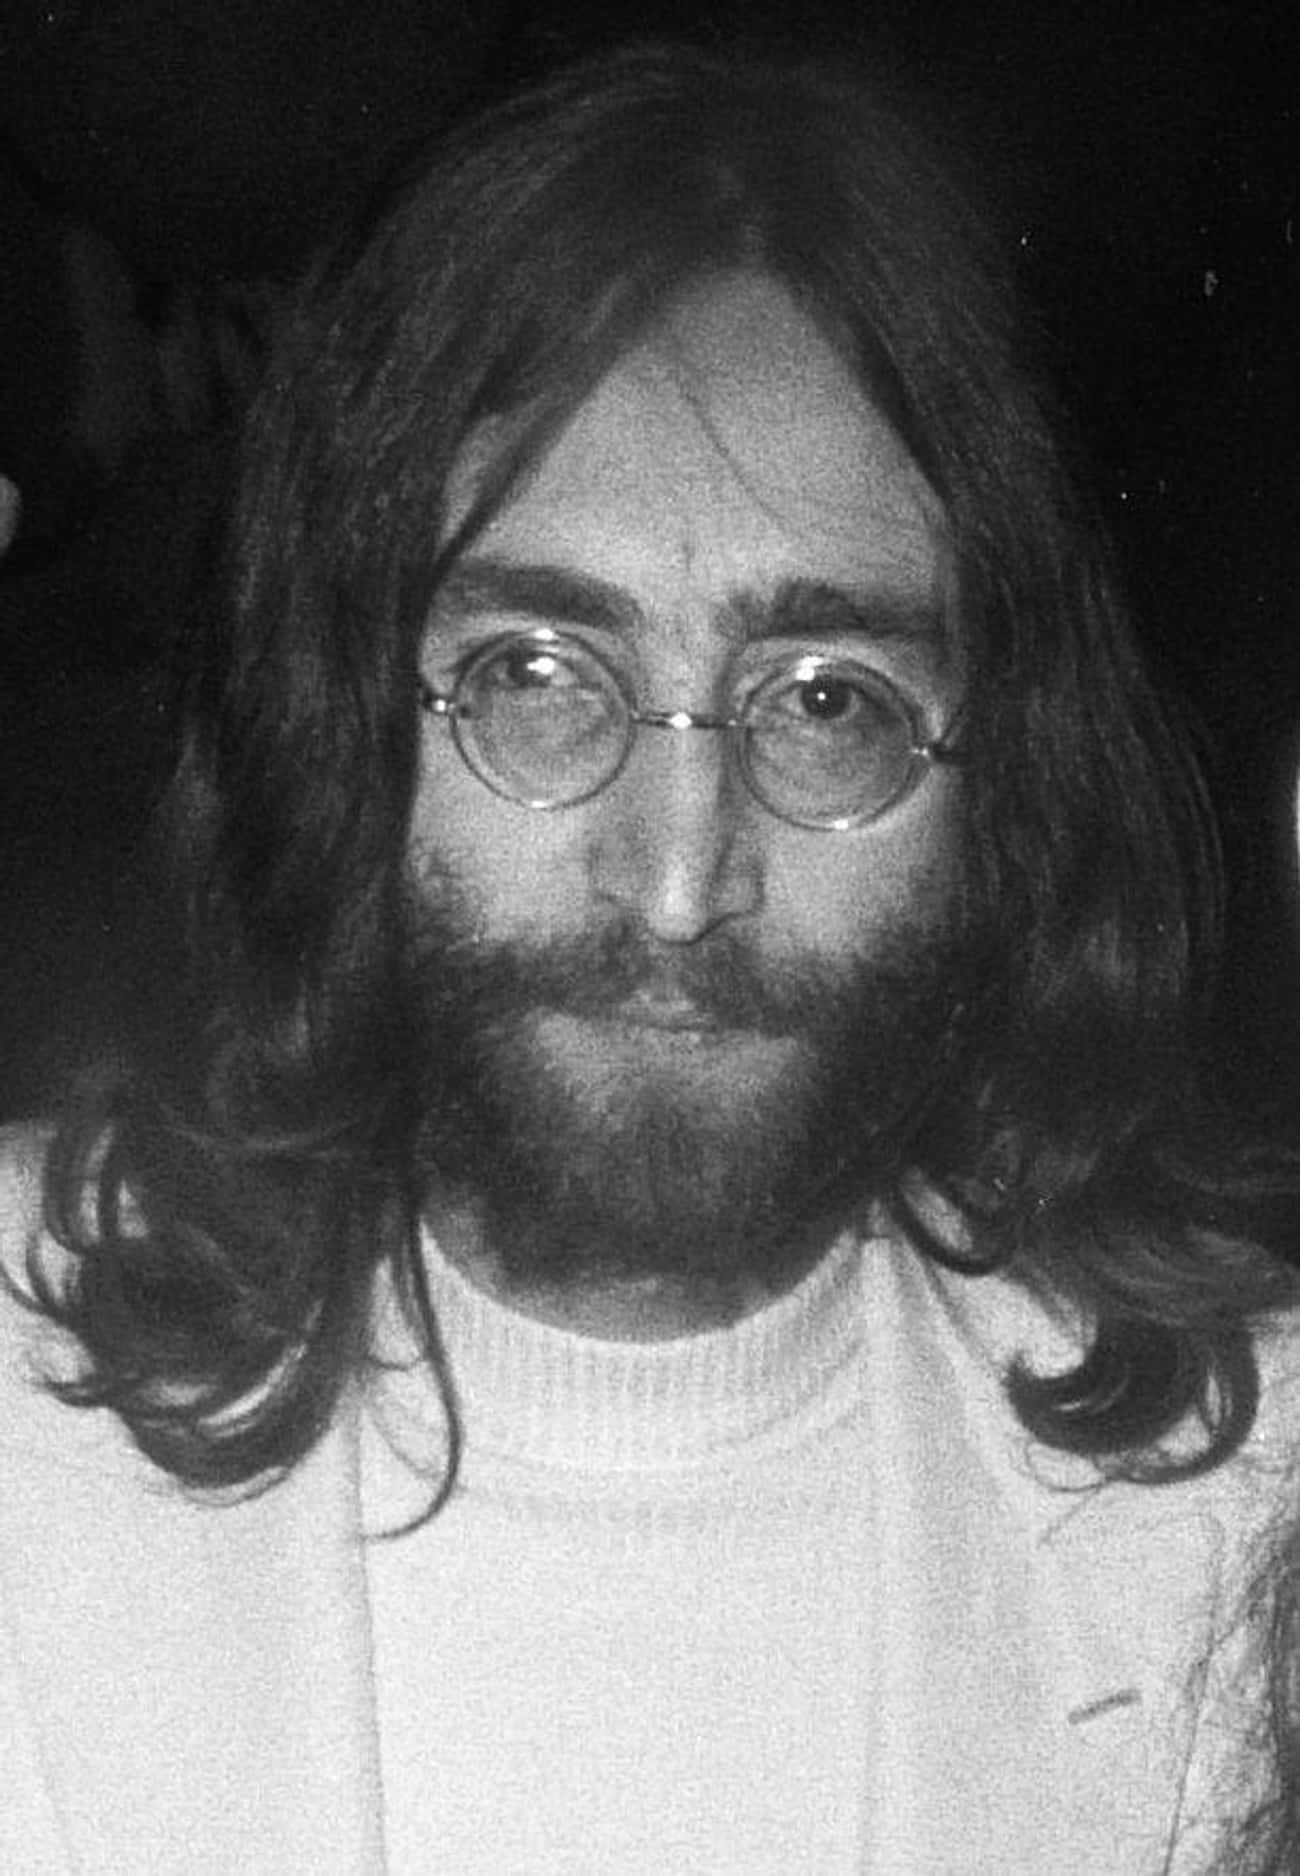 John Lennon's Tooth